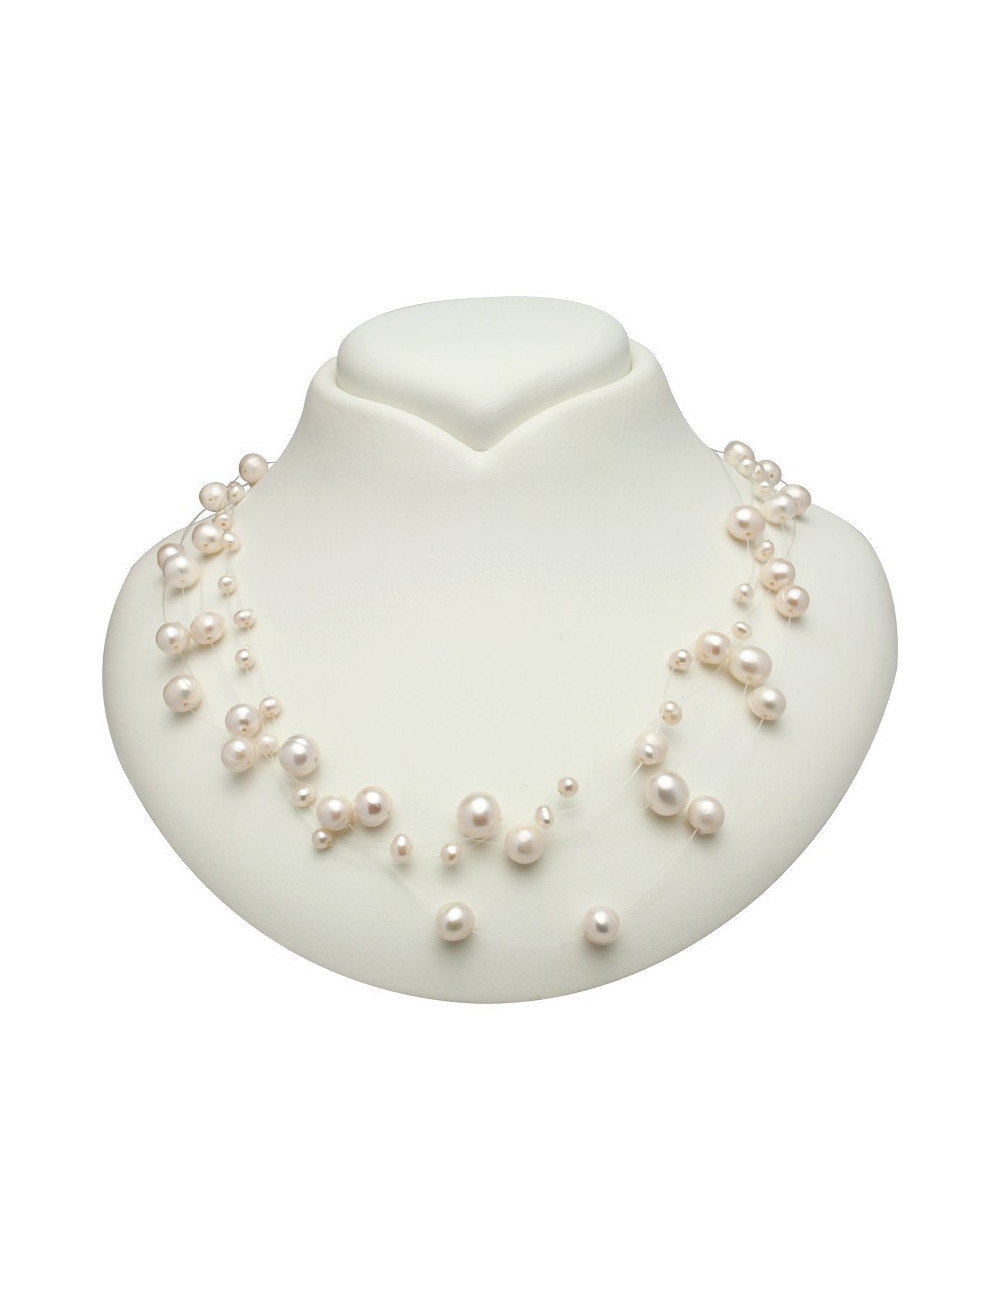 Naszyjnik z białymi perłami słodkowodnymi różnej wielkości, umieszczonymi na pięciu żyłkach NPAJ5BS1